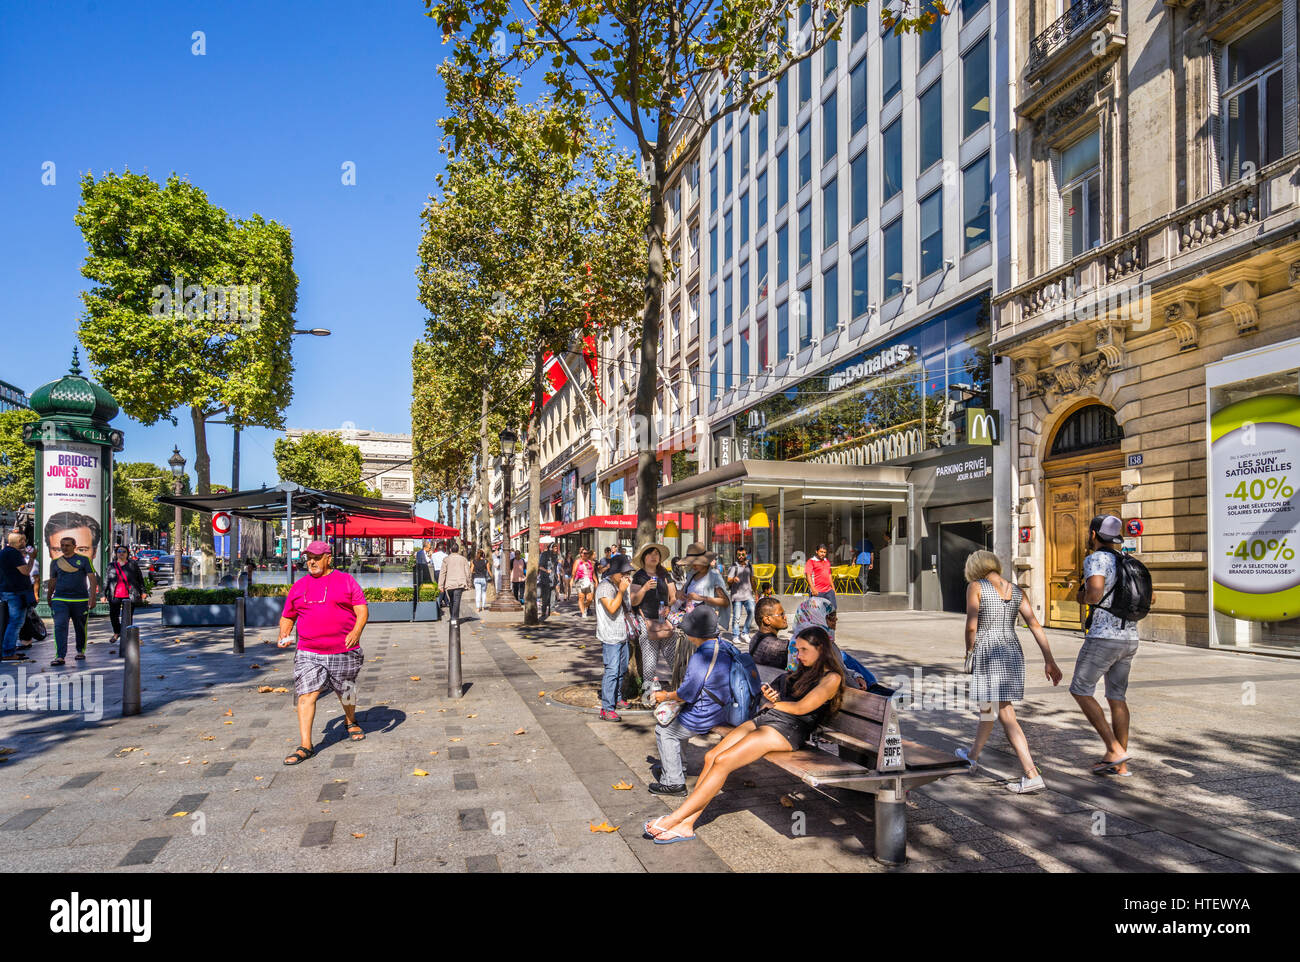 France, Ile-de-France, Paris, upscale shopping at the Avenue des Champs-Élysées Stock Photo